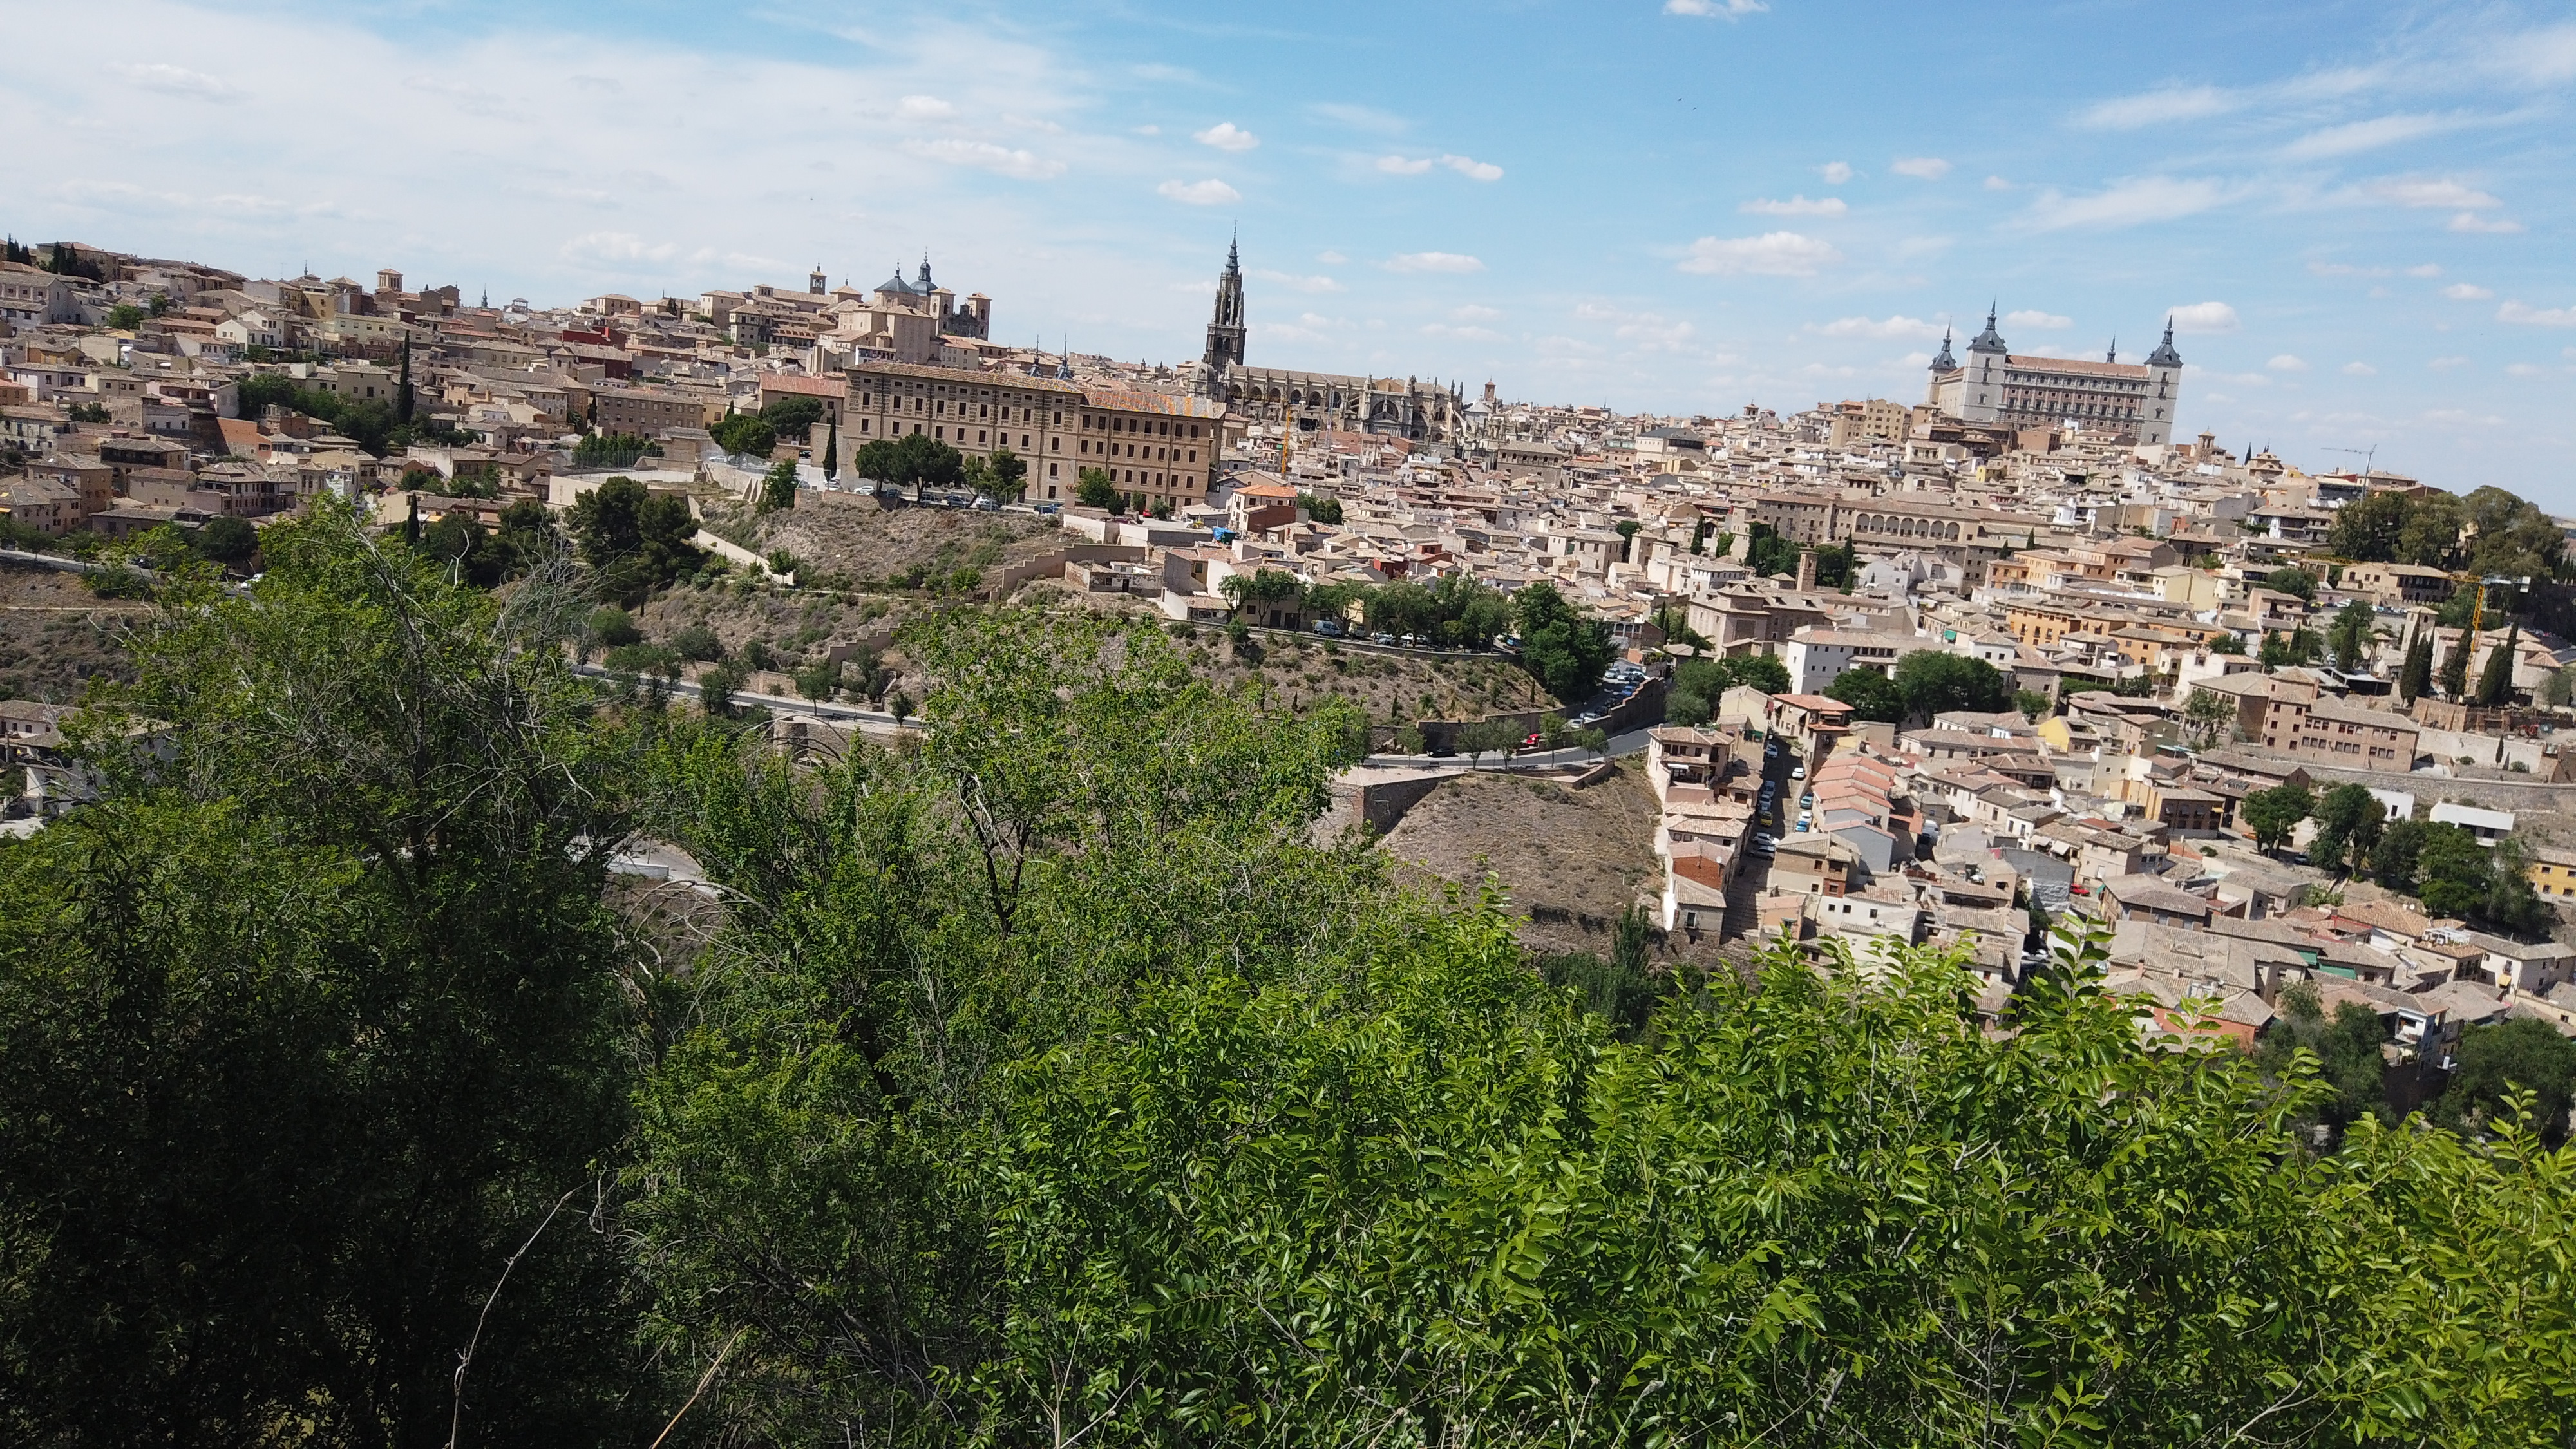 魅力あふれる中世の街並みと大聖堂のあるトレド パリとスペインの旅行記19 Kochan Blog 生涯挑戦